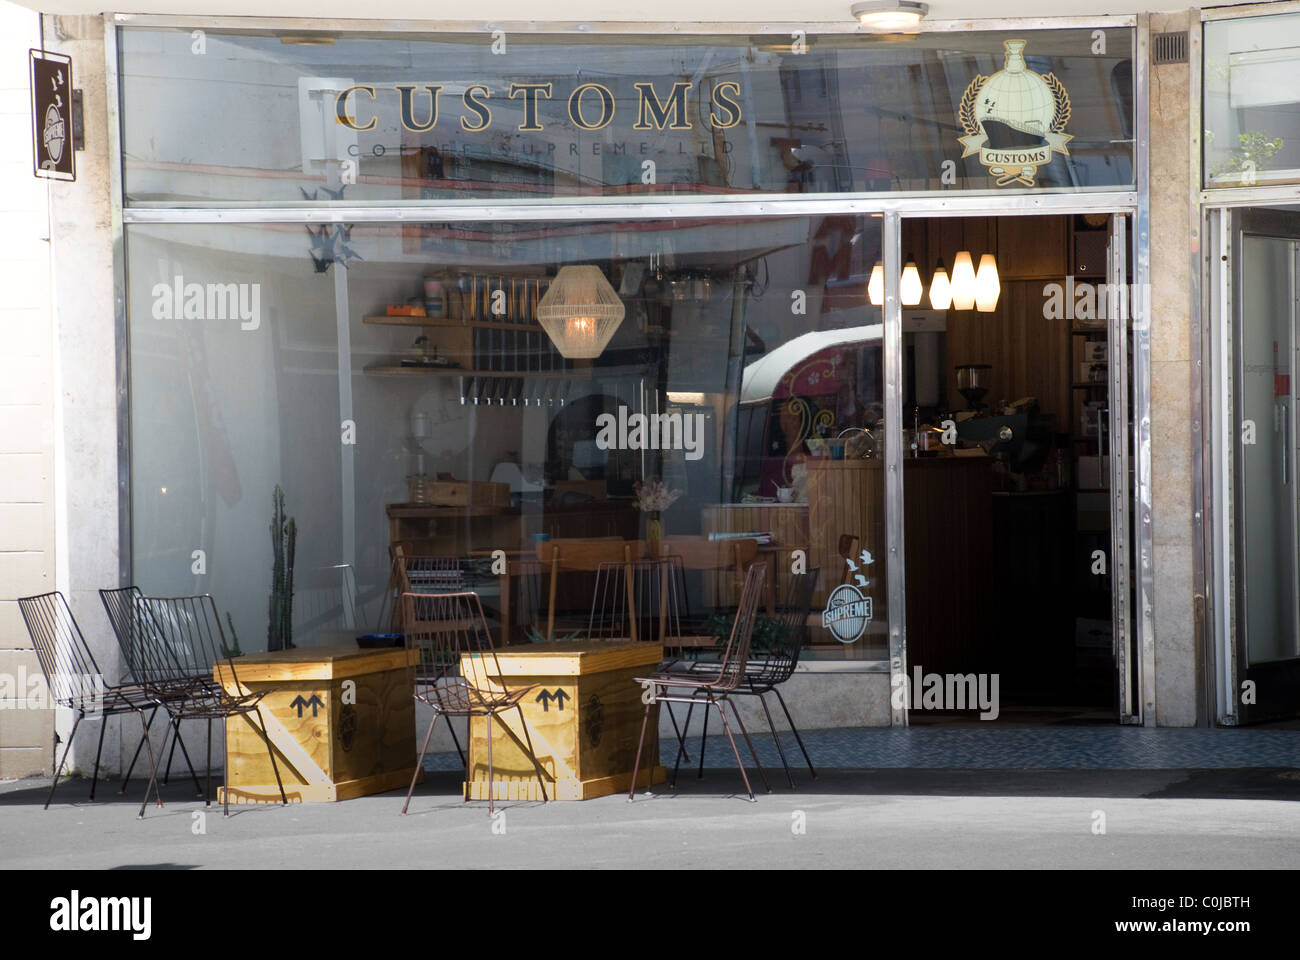 Customs Café / coffee shop, Cuba Street (Center of cafe culture),  Wellington, New Zealand Stock Photo